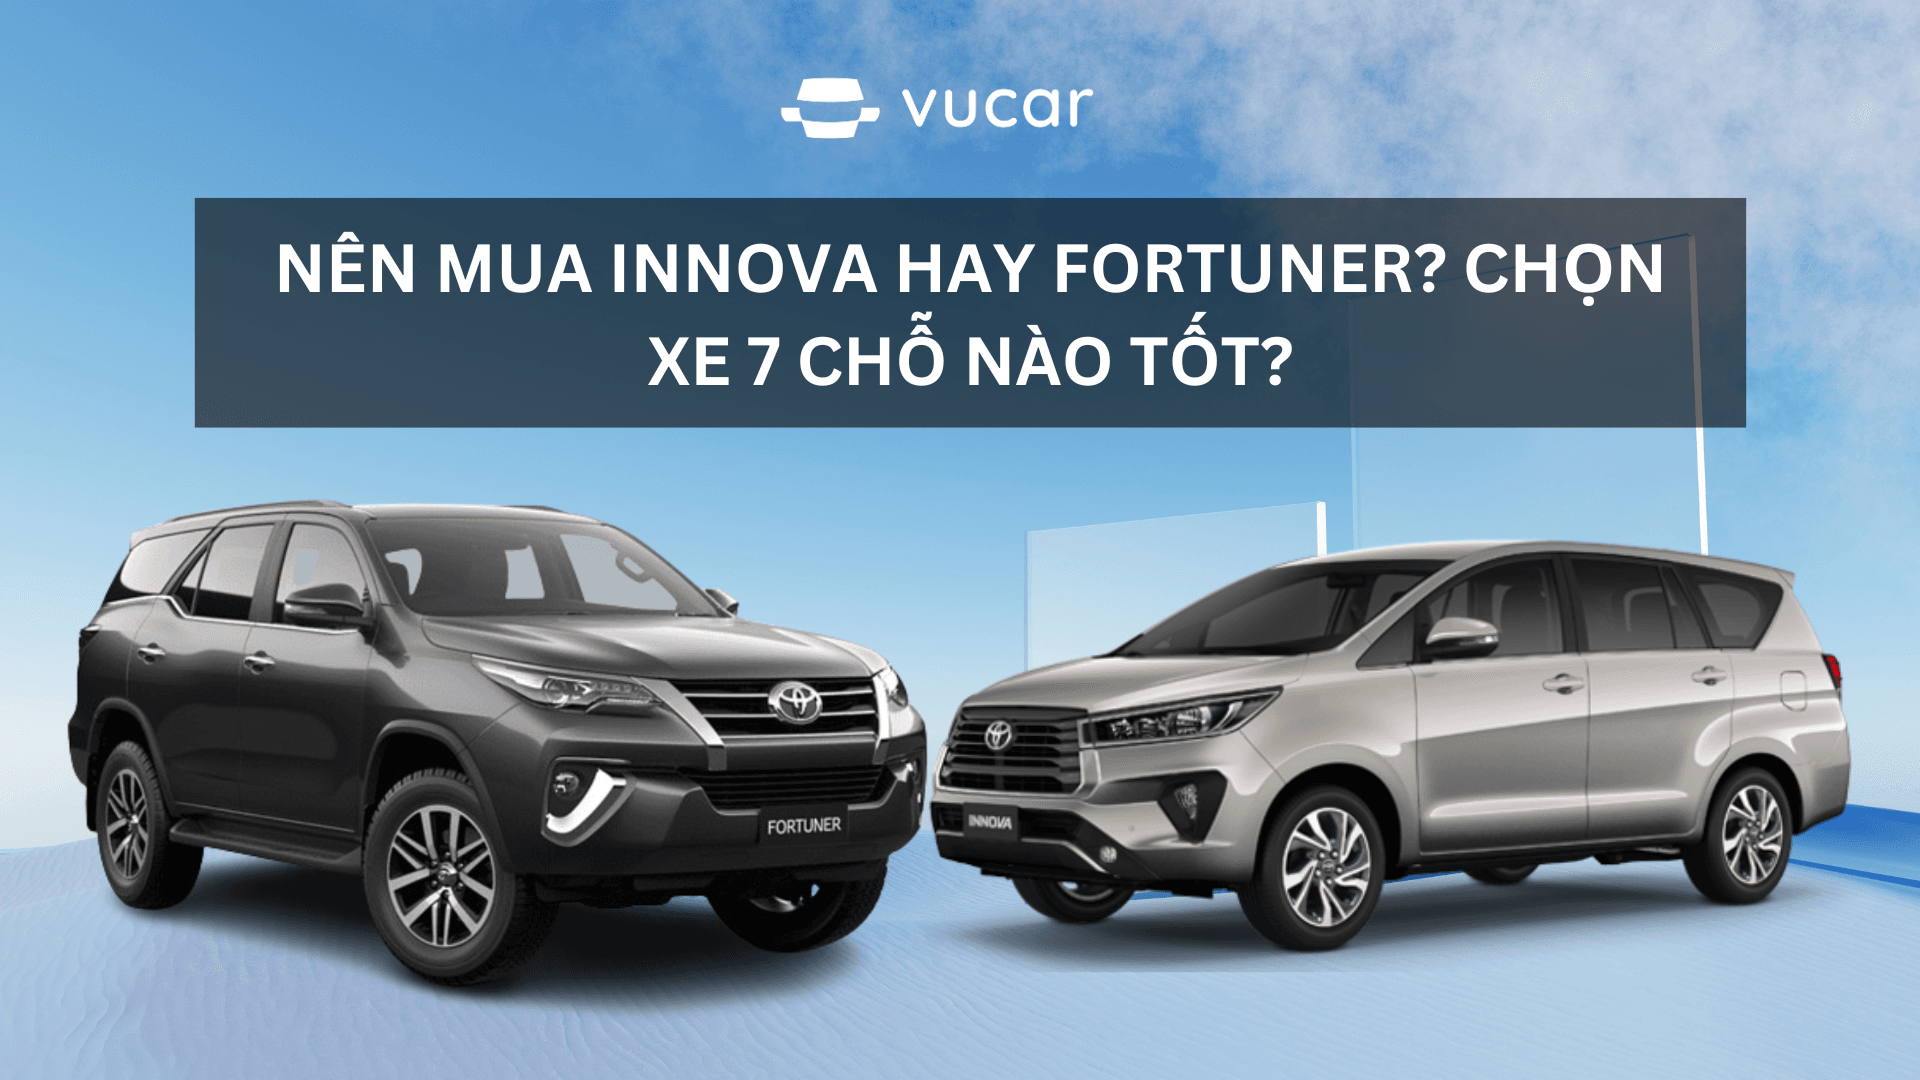 Nên mua Innova hay Fortuner? Chọn xe 7 chỗ nào tốt?